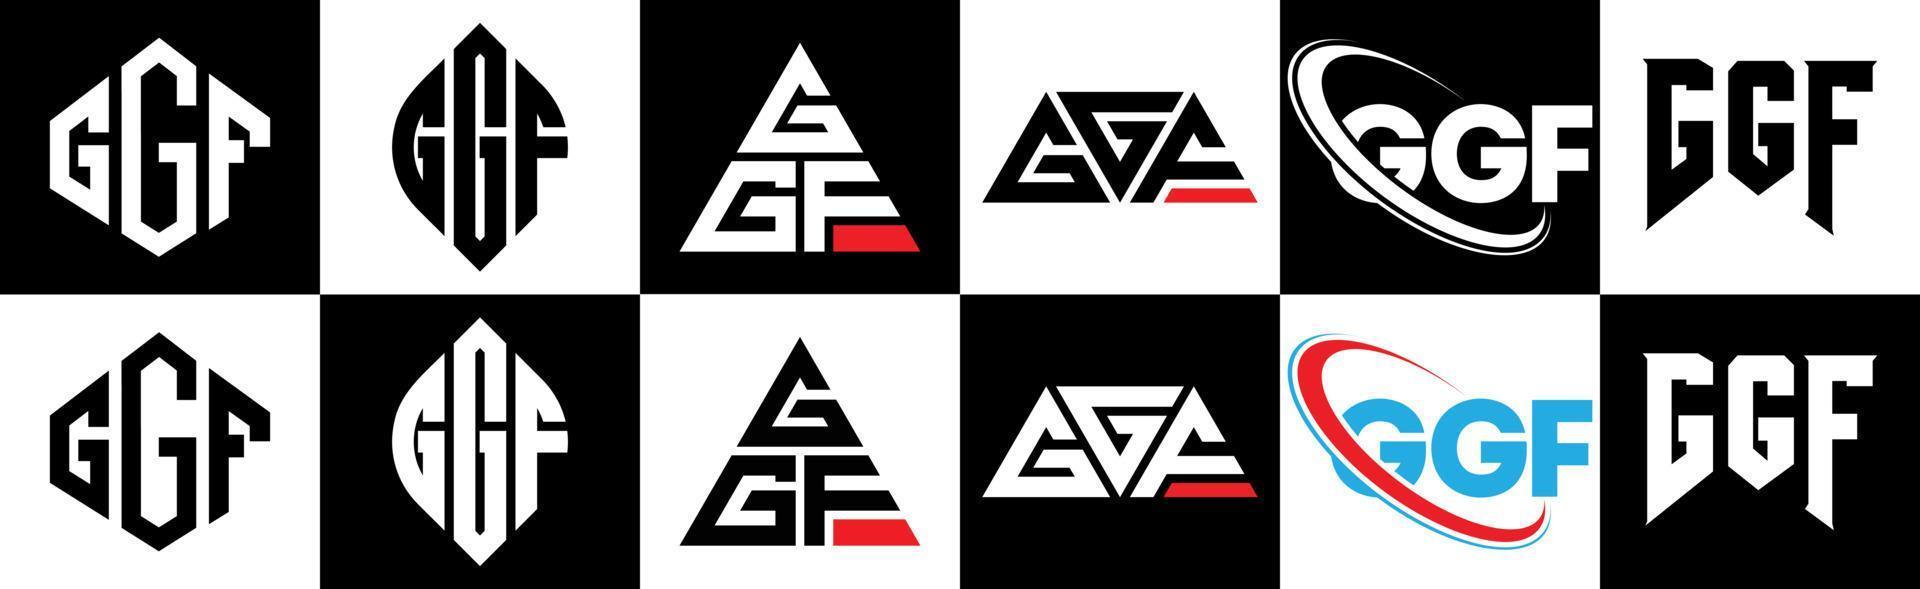 ggf brief logo ontwerp in zes stijl. ggf veelhoek, cirkel, driehoek, zeshoek, vlak en gemakkelijk stijl met zwart en wit kleur variatie brief logo reeks in een tekengebied. ggf minimalistische en klassiek logo vector